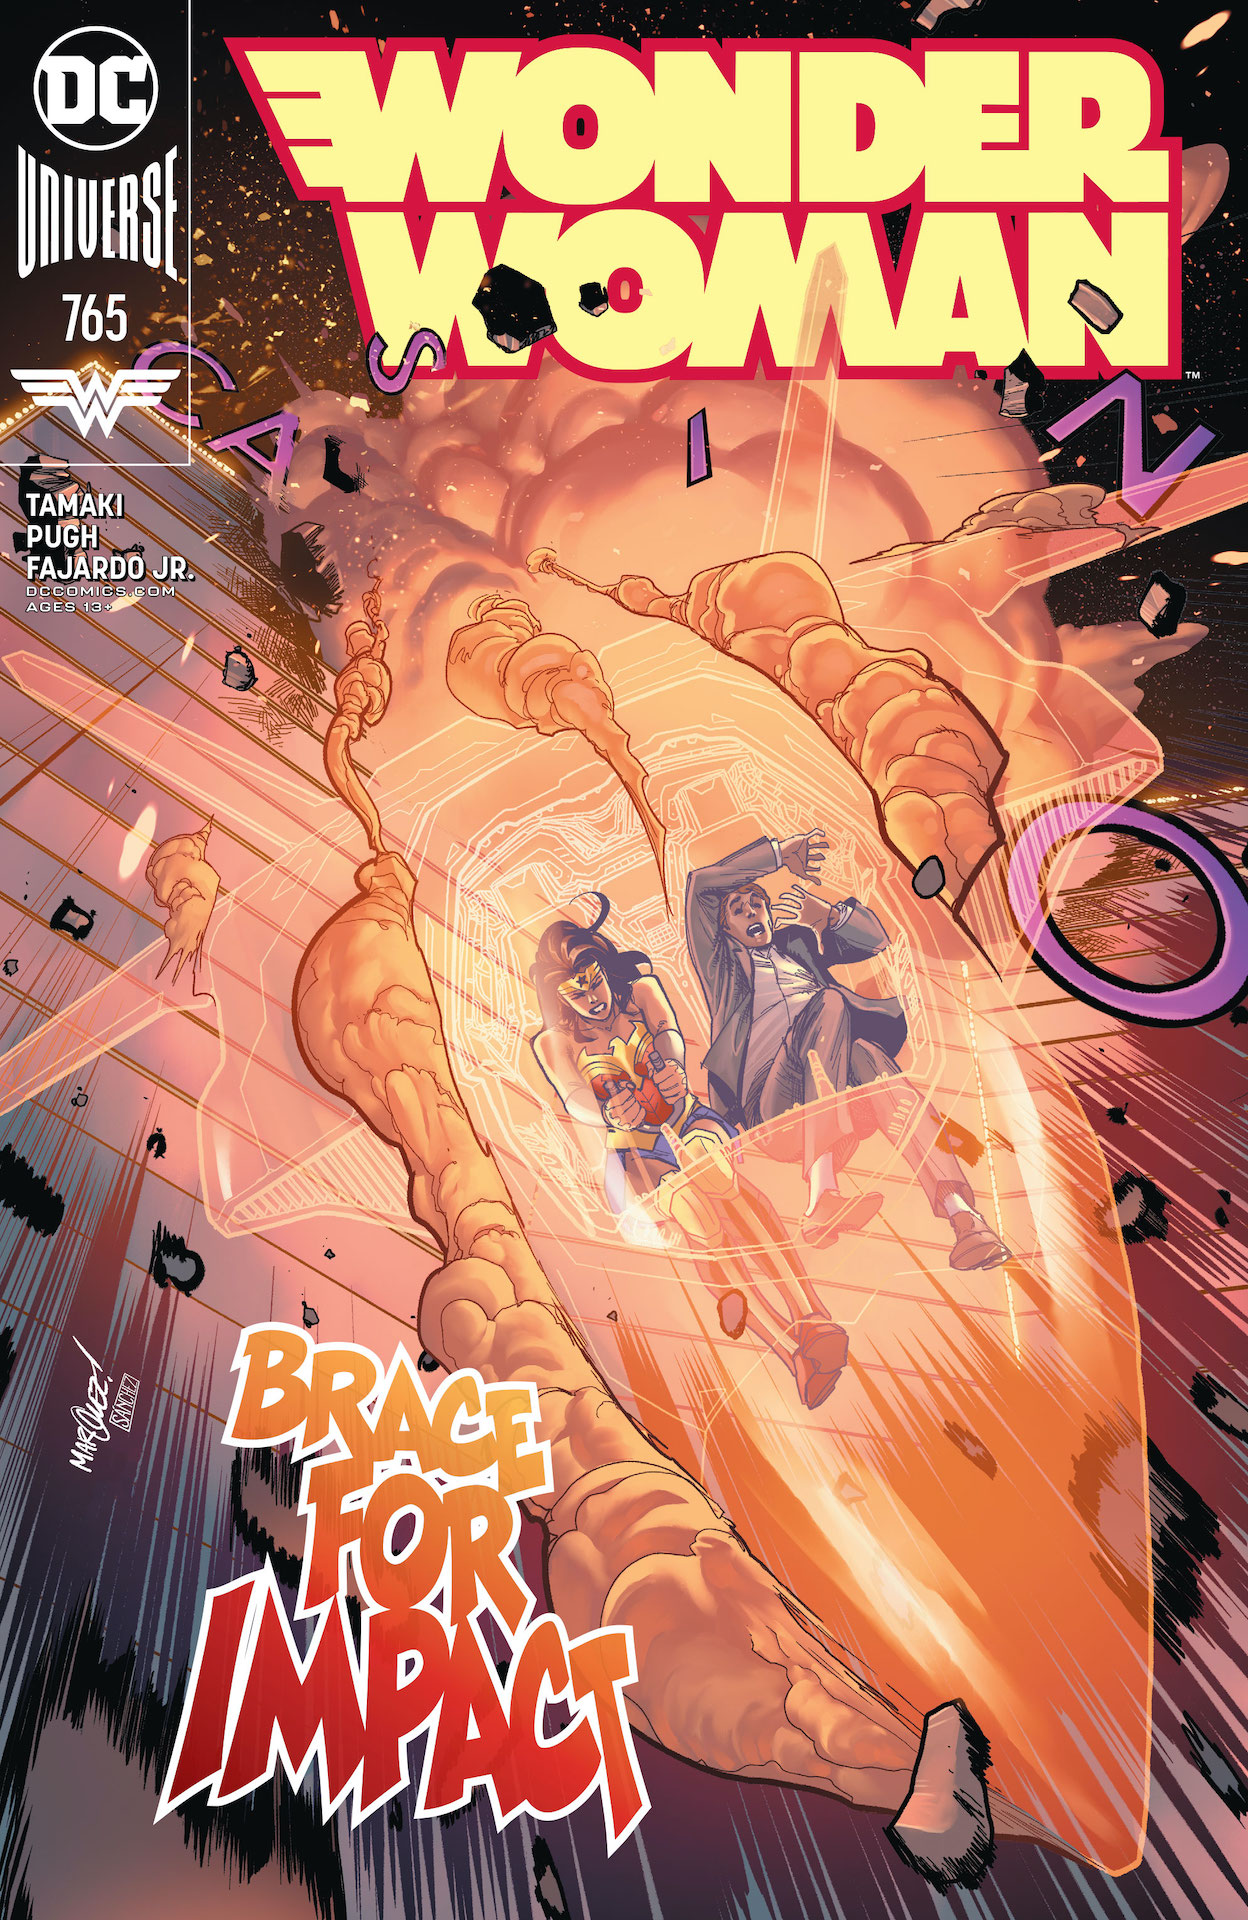 DC Preview: Wonder Woman #765